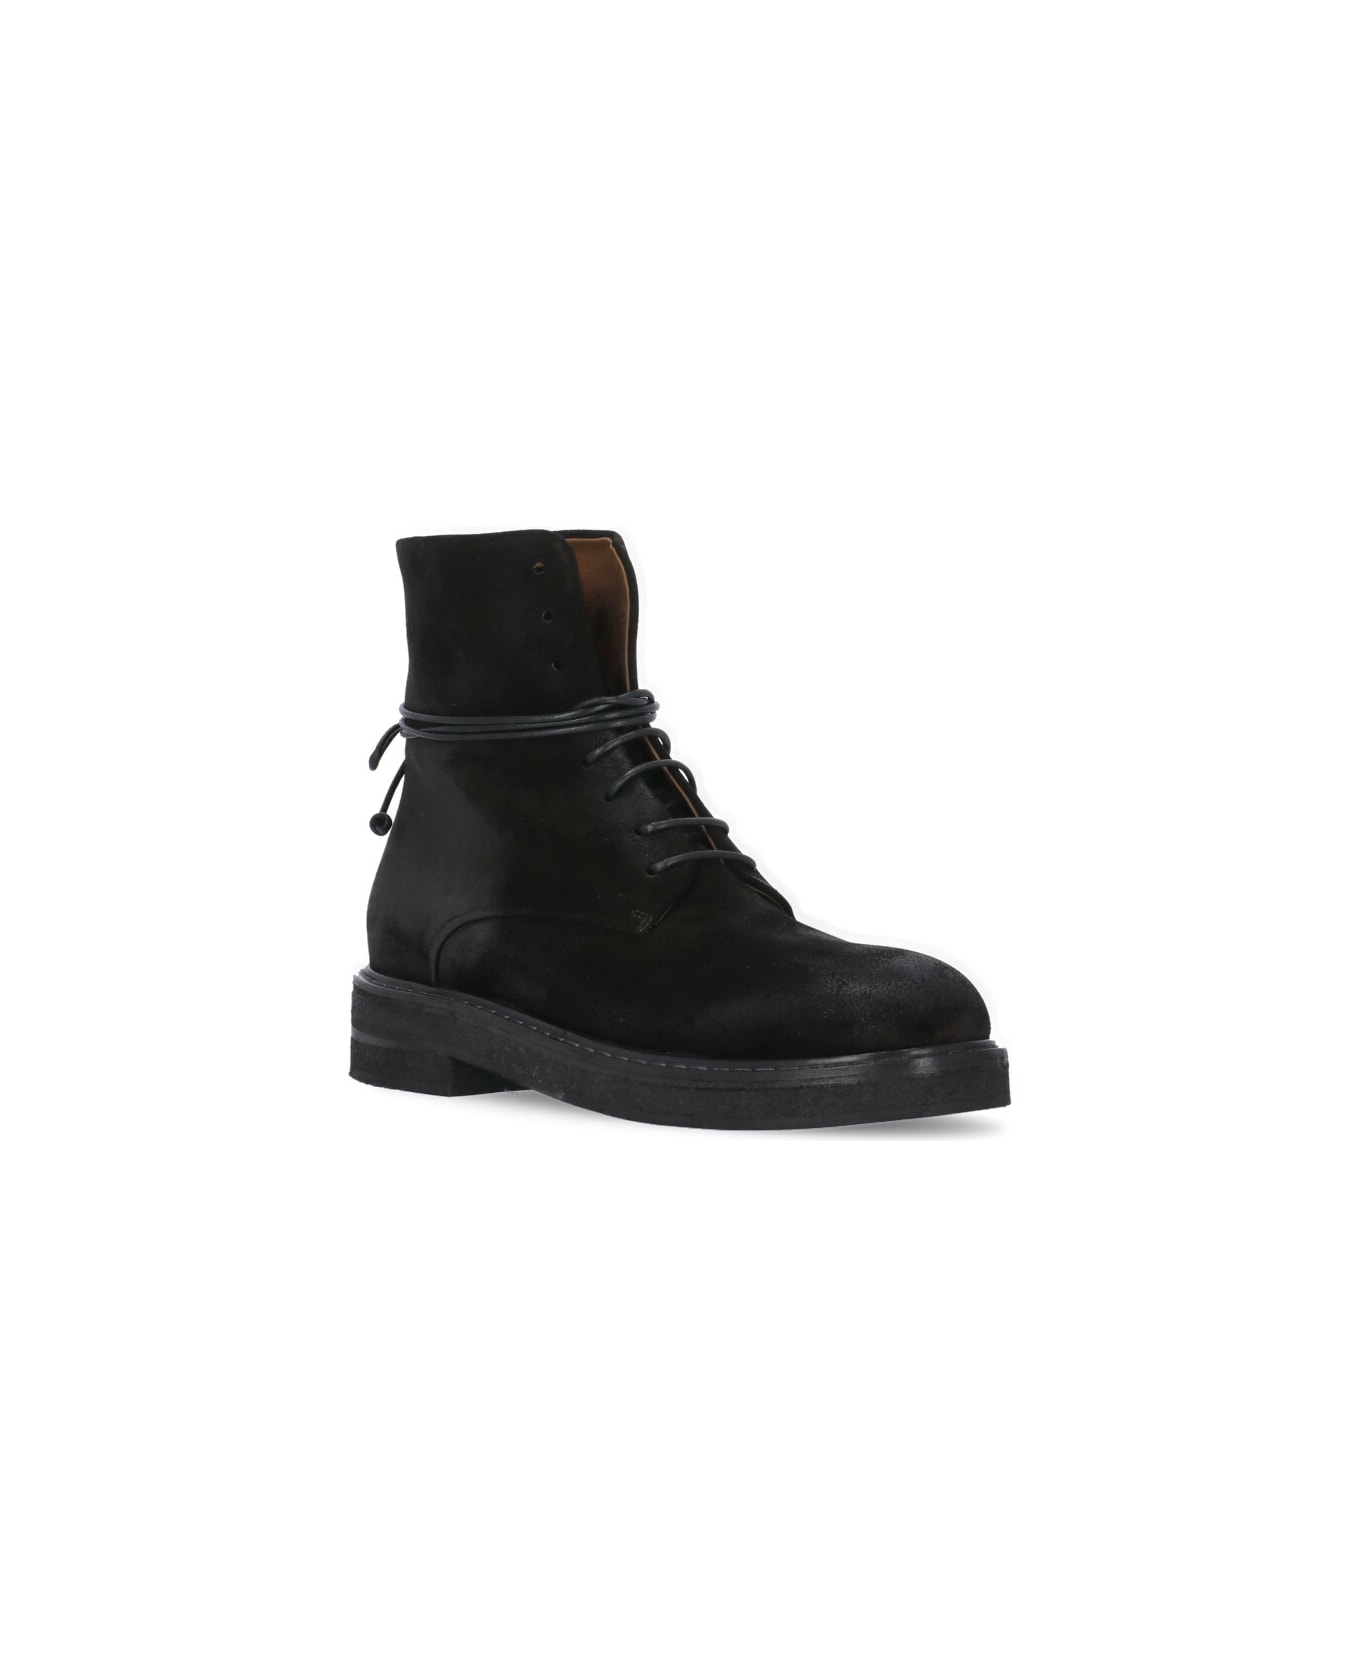 Marsell Parrucca Combat Boots - Black